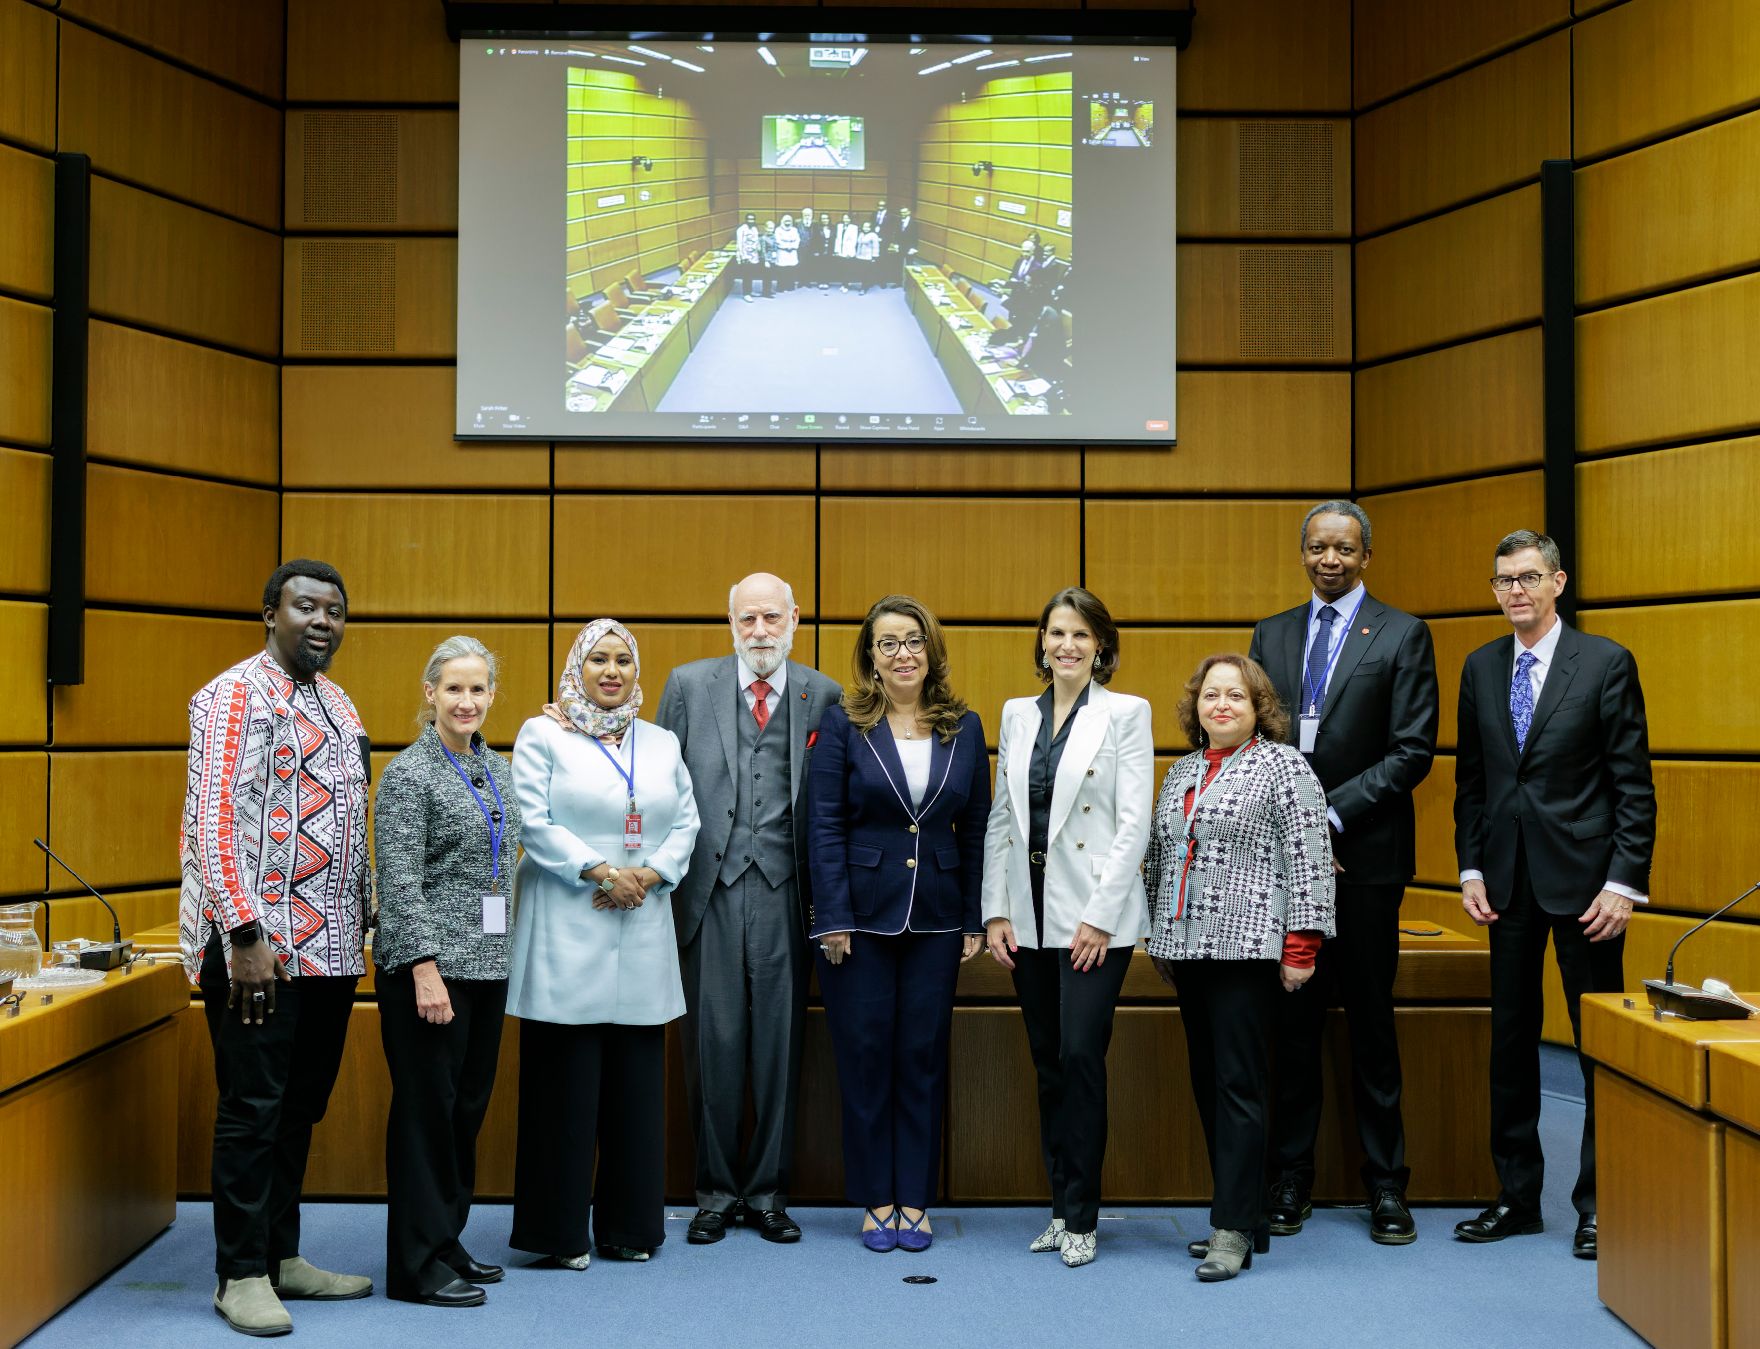 Am 7. März 2023 besuchte Bundesministerin Karoline Edtstadler (4.v.l.) mit dem IGF (Internet Governance Forum) die UNO-City Wien. Im Bild mit dem Vorsitzenden des IGF, Vinton Cerf (4.v.r.).